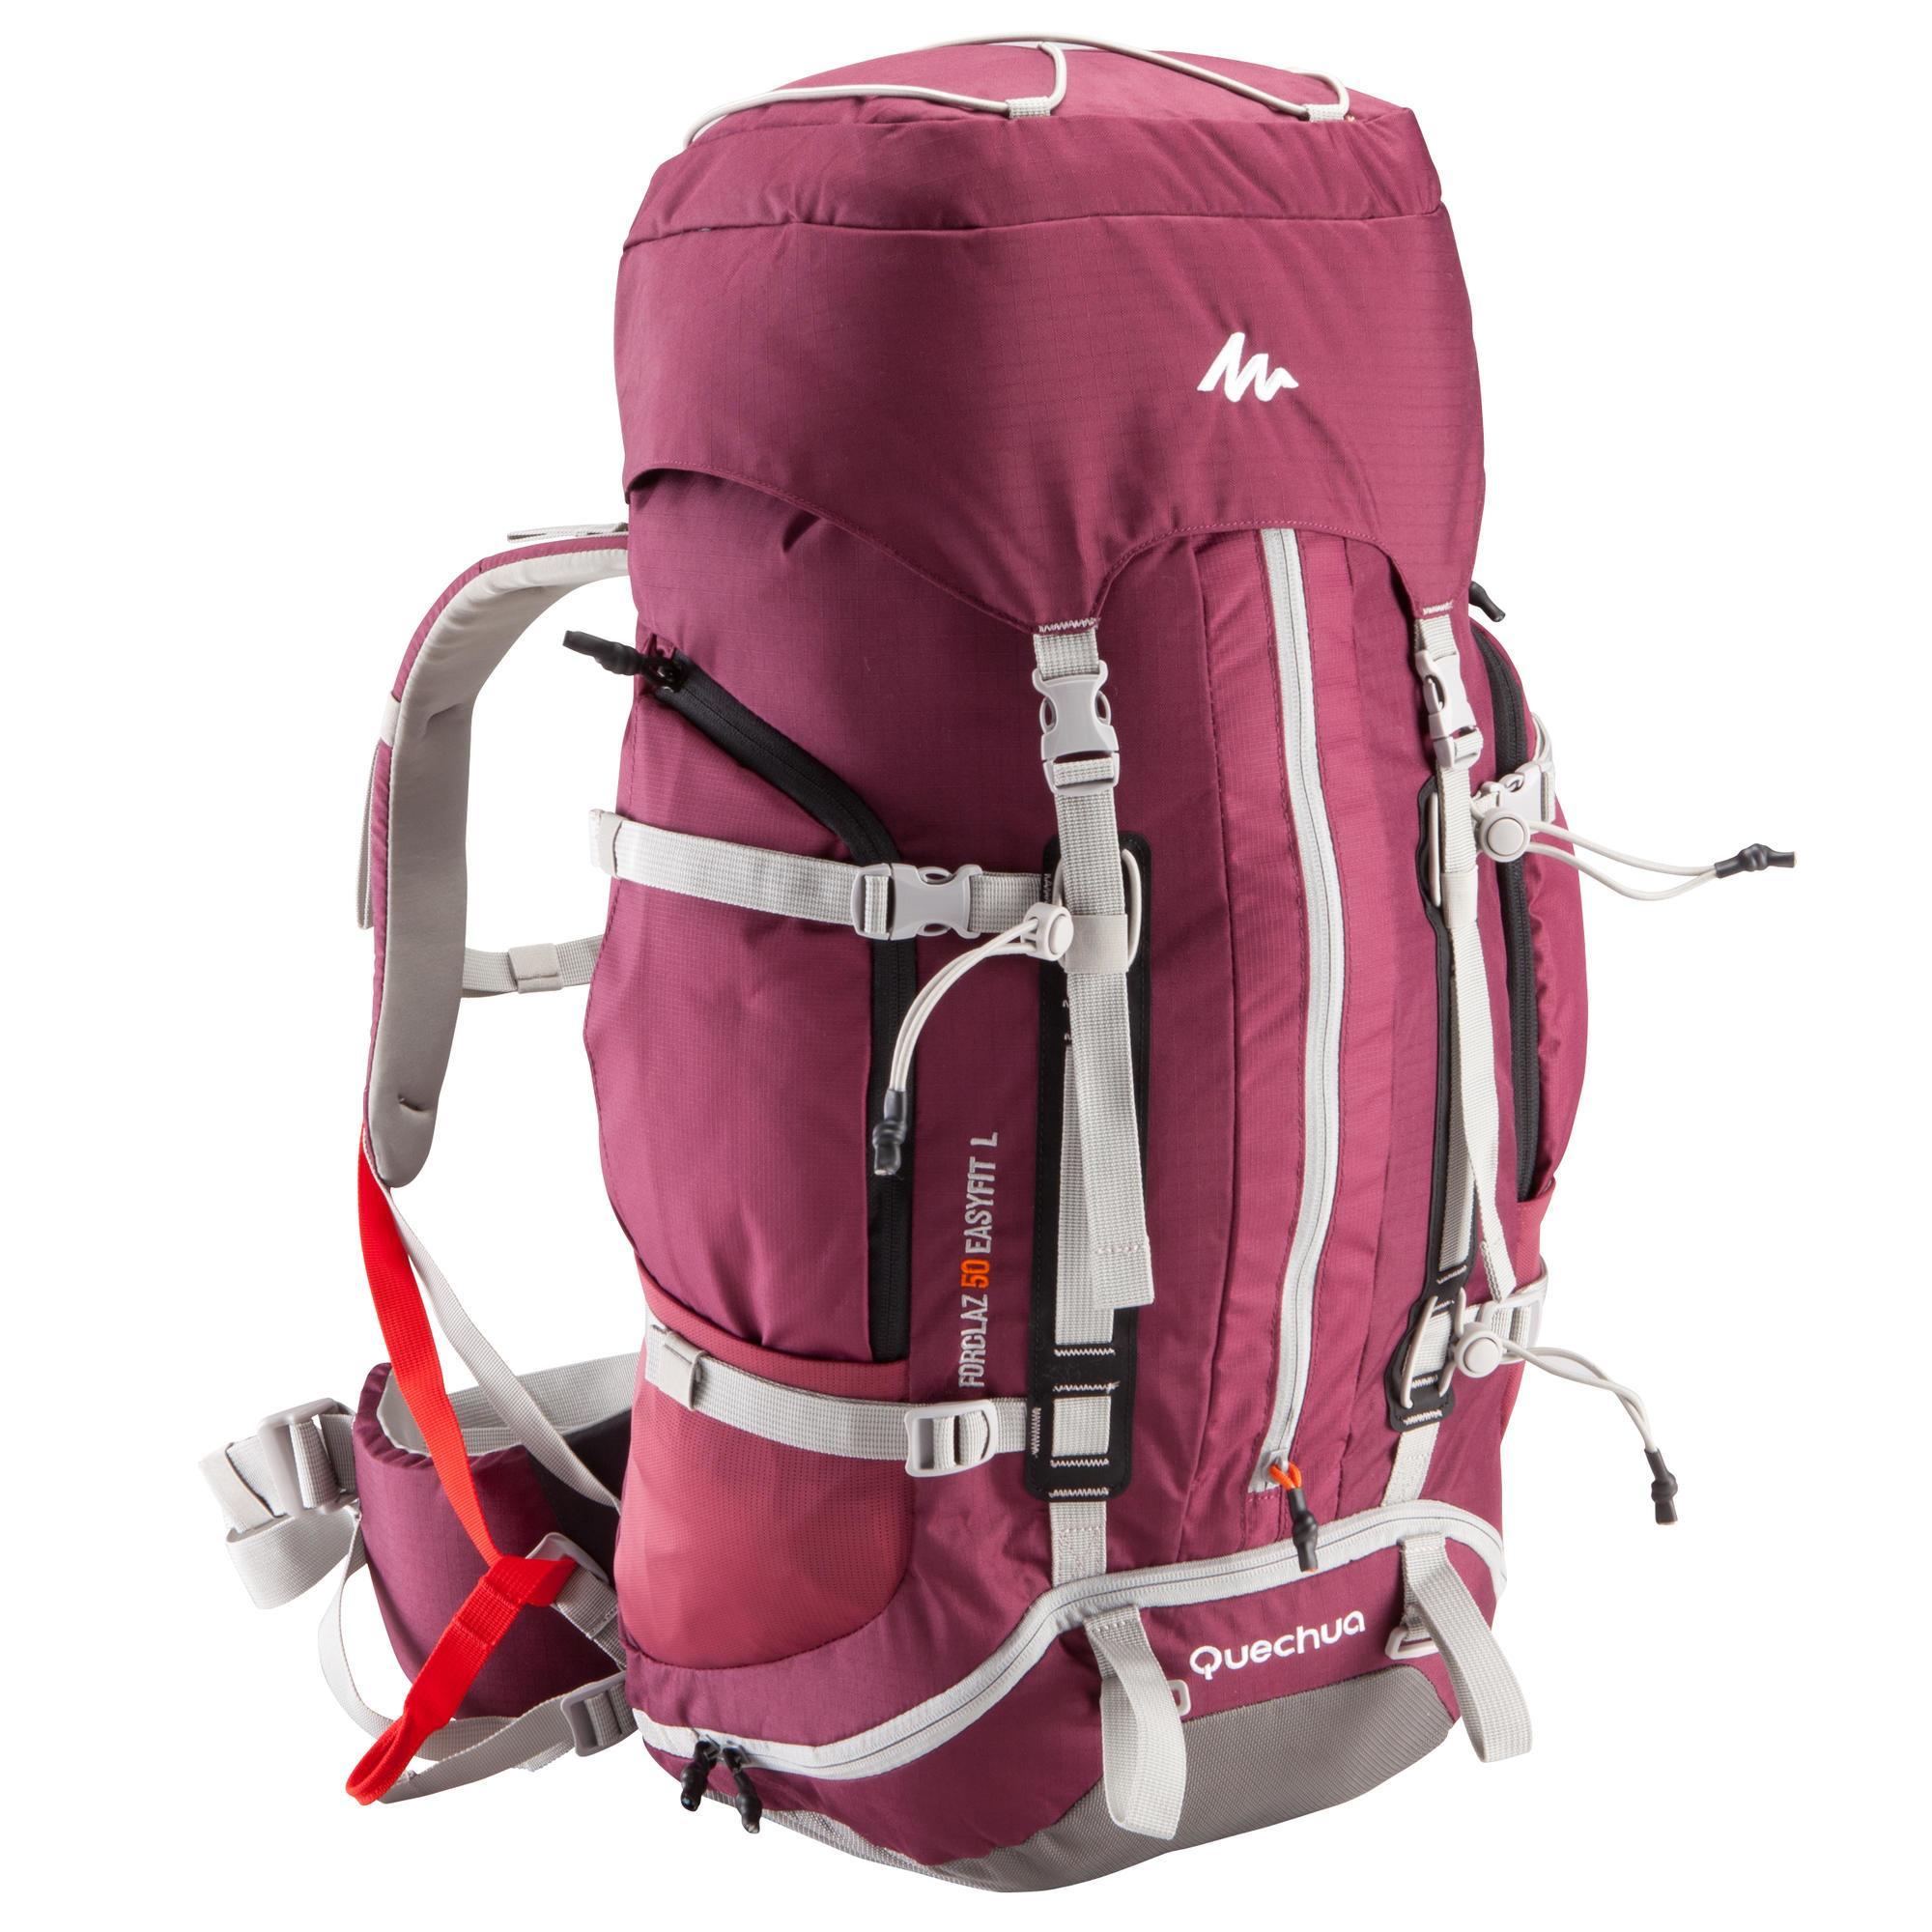 Inspecteur escort tyfoon Quechua Backpack voor dames Easyfit 50 l paars - Wanderbird - Travel